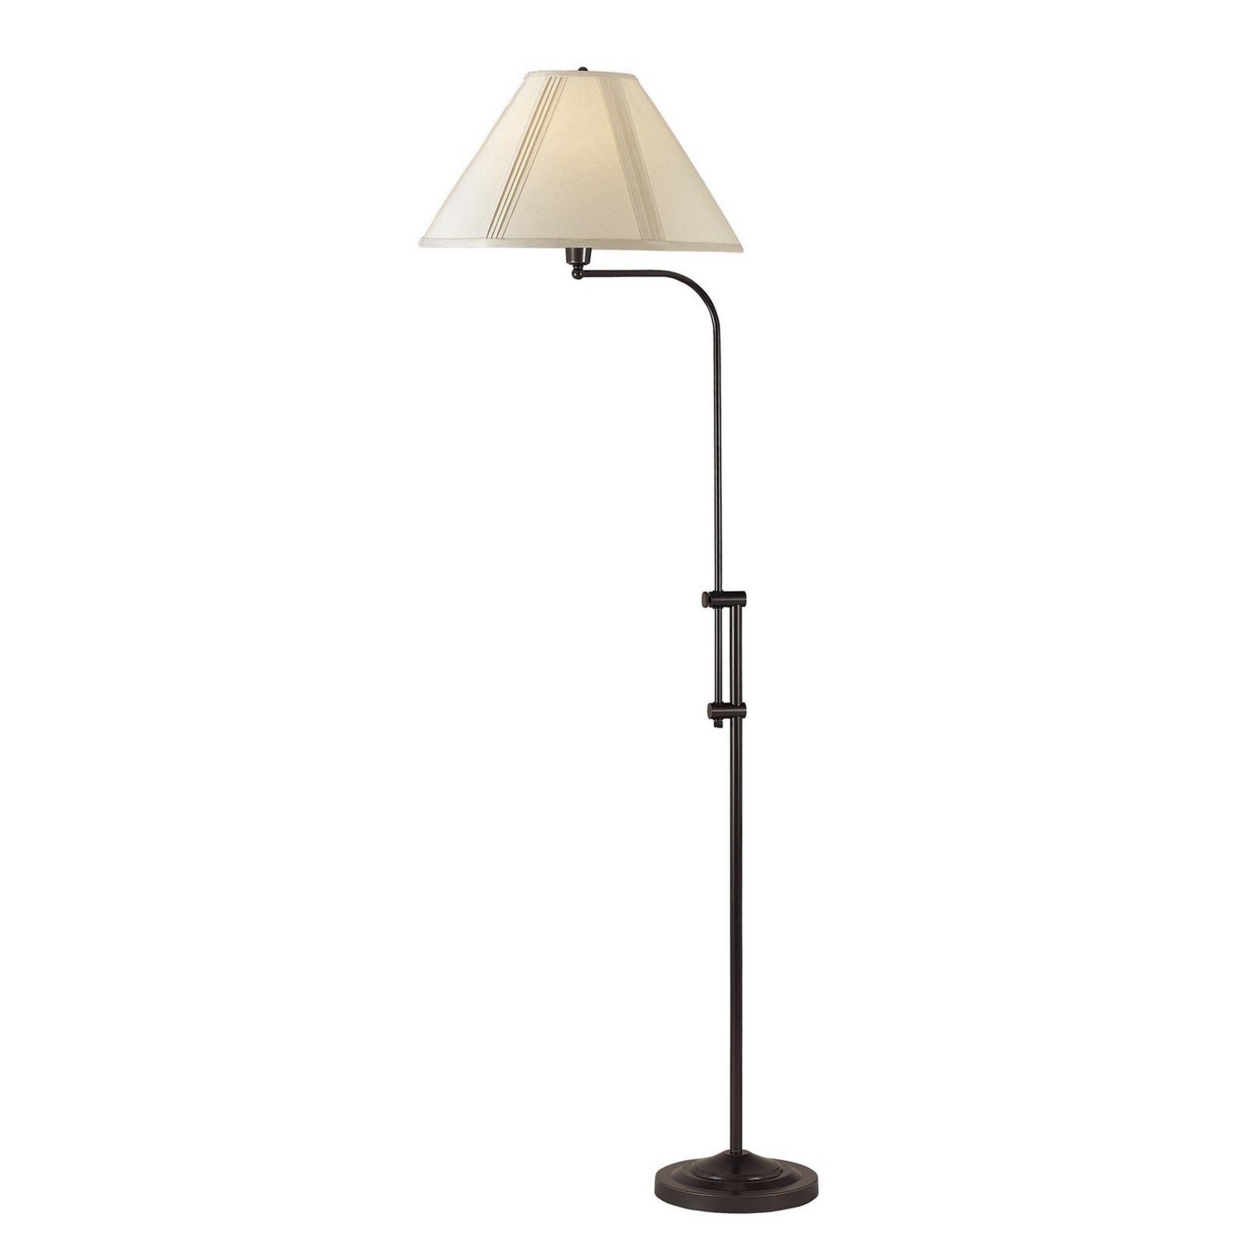 3 Way Metal Floor Lamp With And Adjustable Height Mechanism, Bronze- Saltoro Sherpi